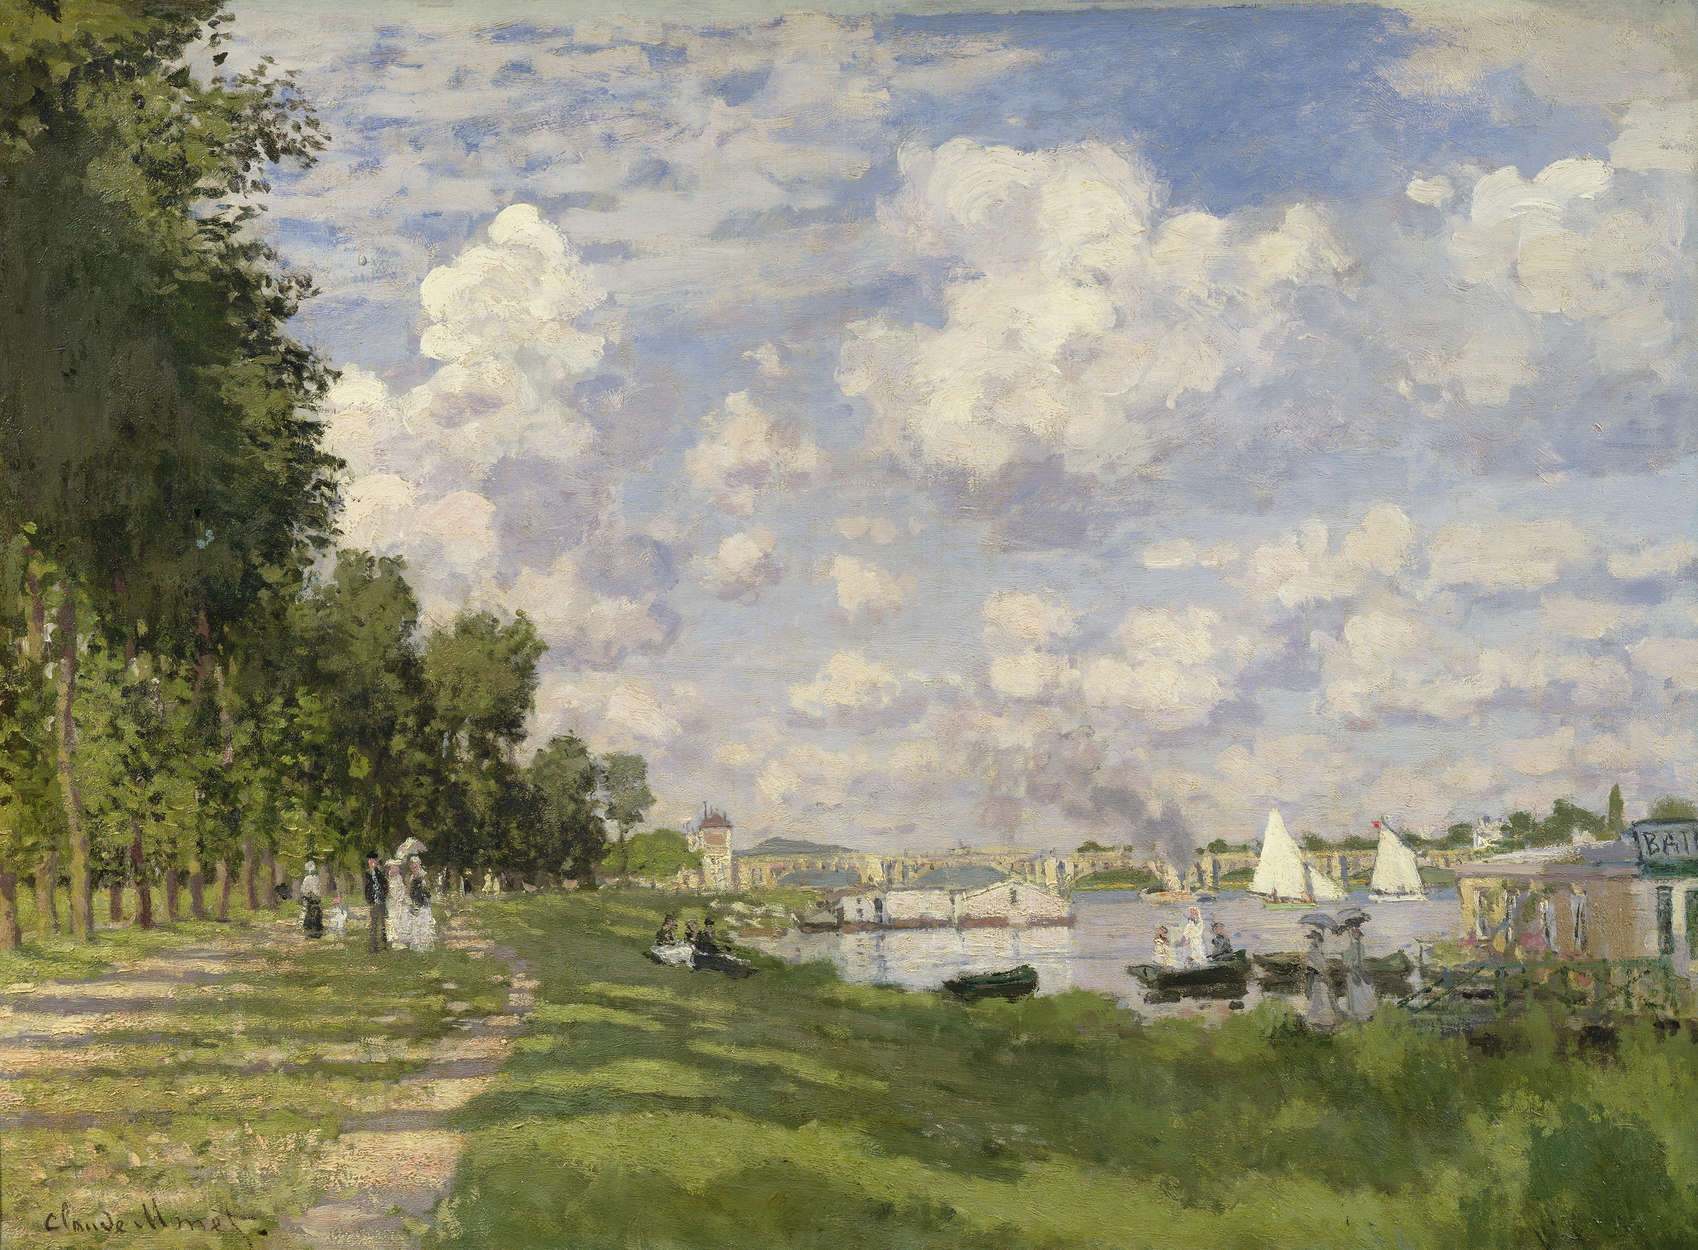             De jachthaven van Argenteuil" muurschildering van Claude Monet
        